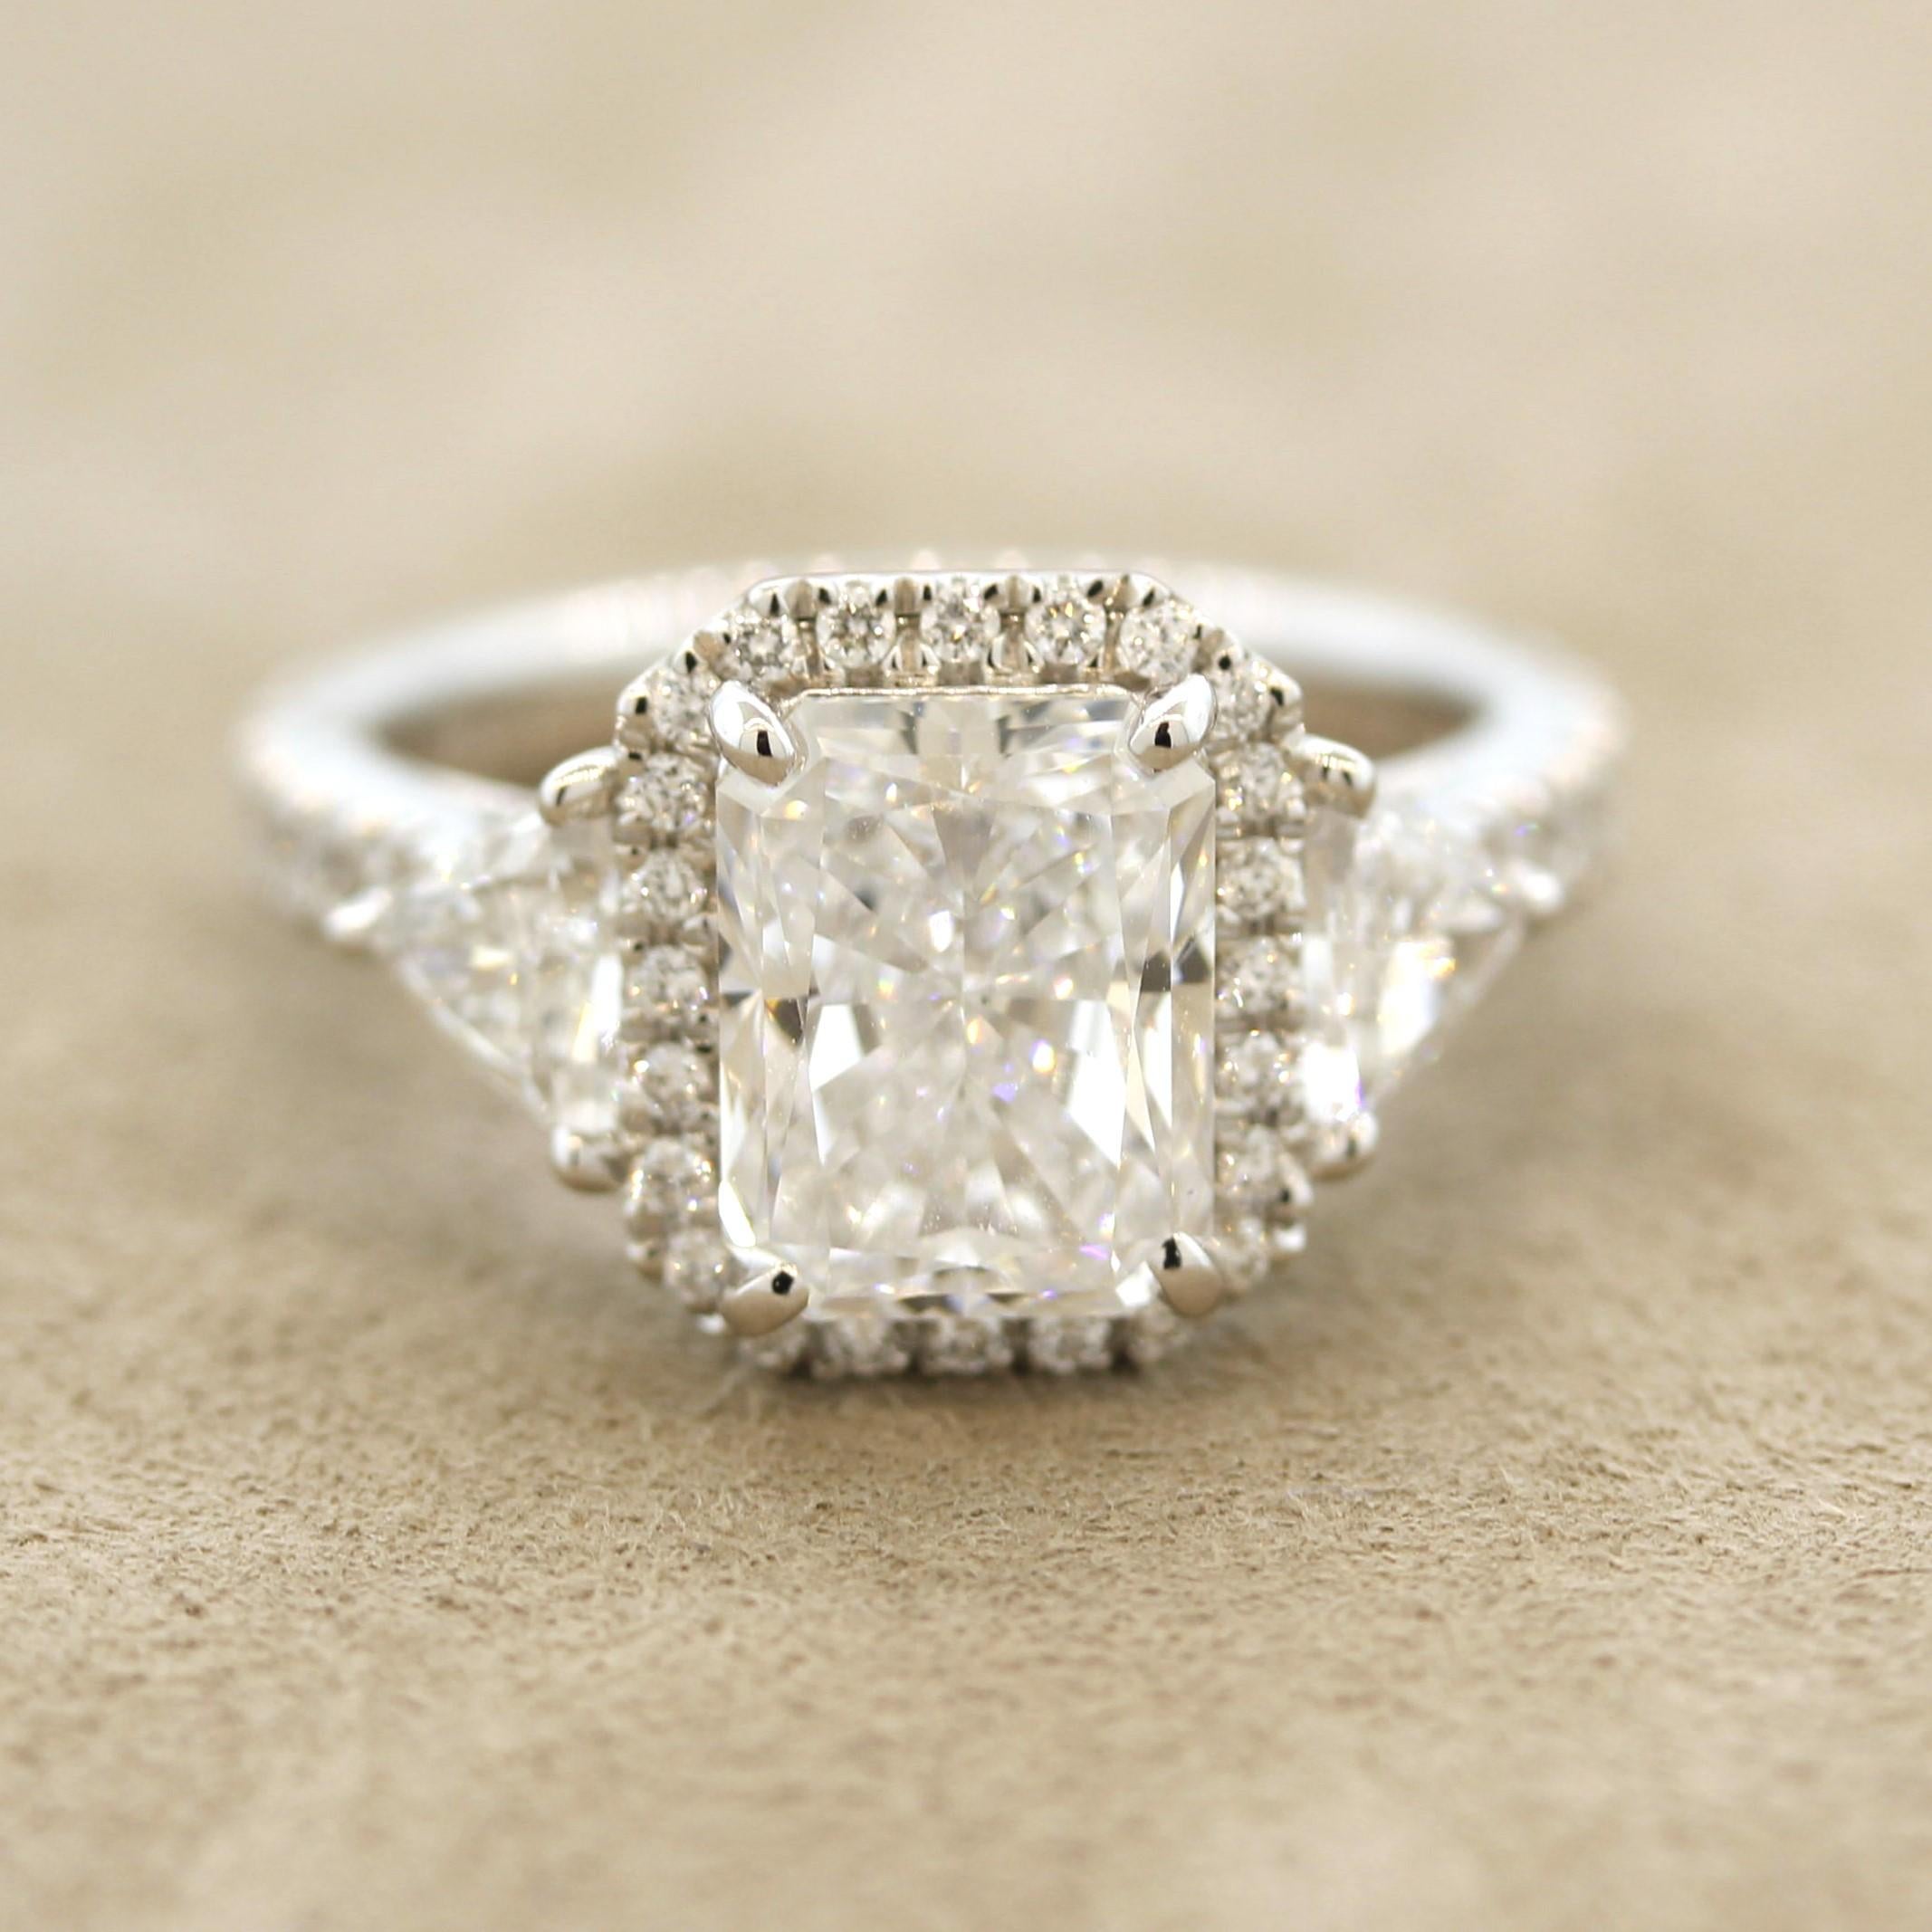 Aussi bon que possible ! Un diamant radiant de 3,04 carats orne cette ravissante bague en platine. Il a un grade de couleur D et un grade de clarté IF (internally flawless), ce qui rend ce diamant extrêmement pur, propre et blanc ! Il est complété